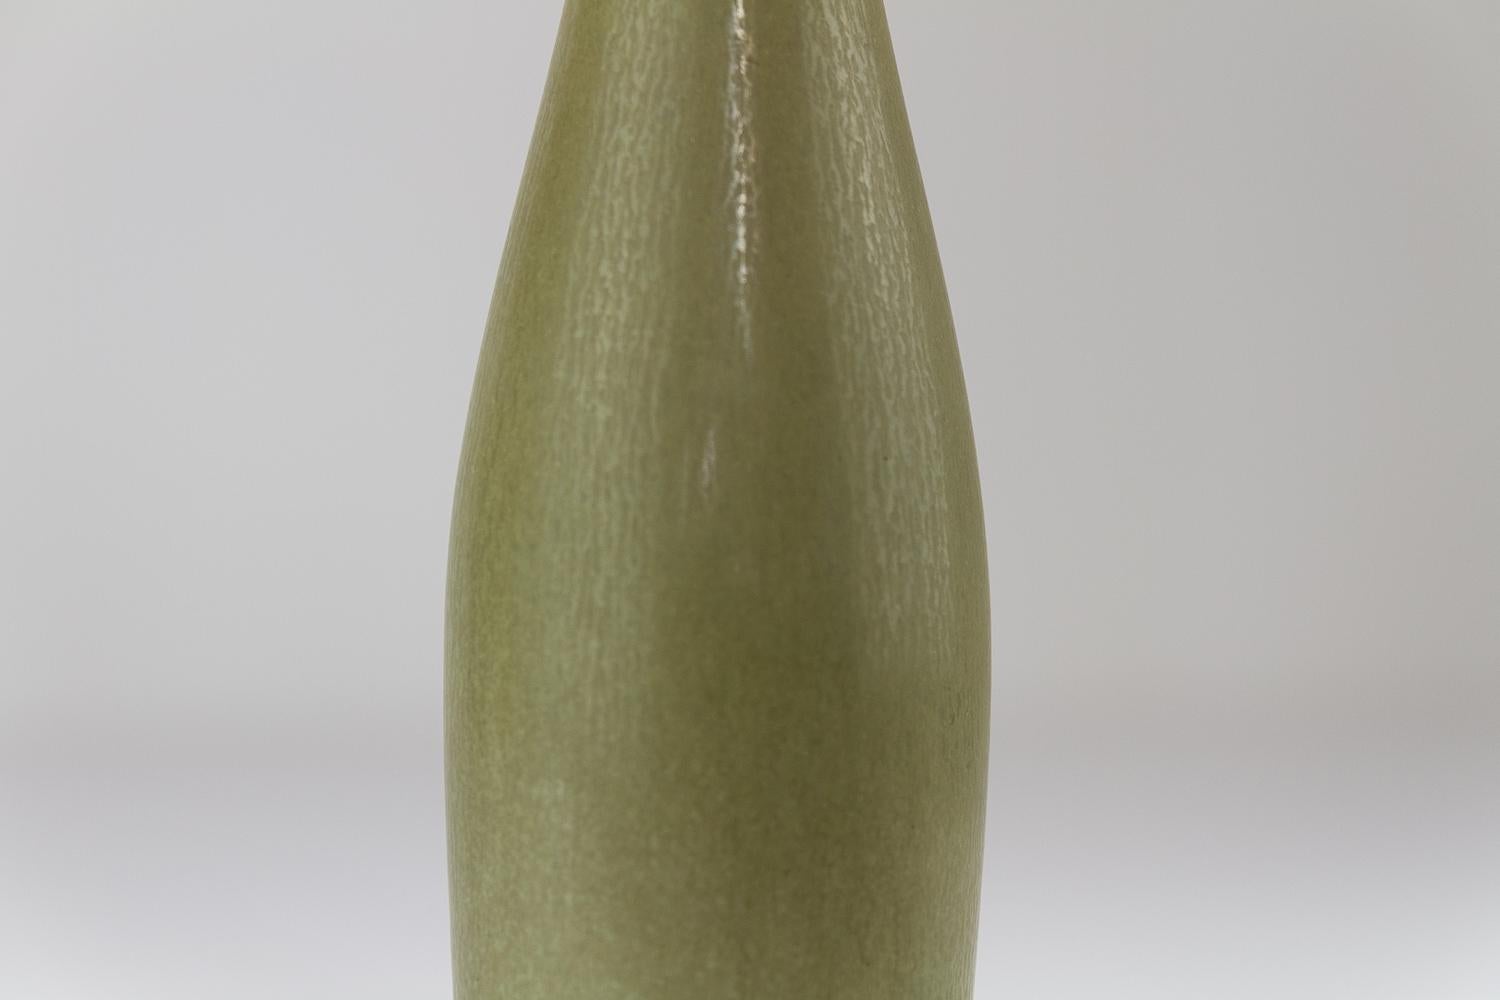 Danish Modern Ceramic Vase by Per Linnemann-Schmidt for Palshus, 1960s. For Sale 9